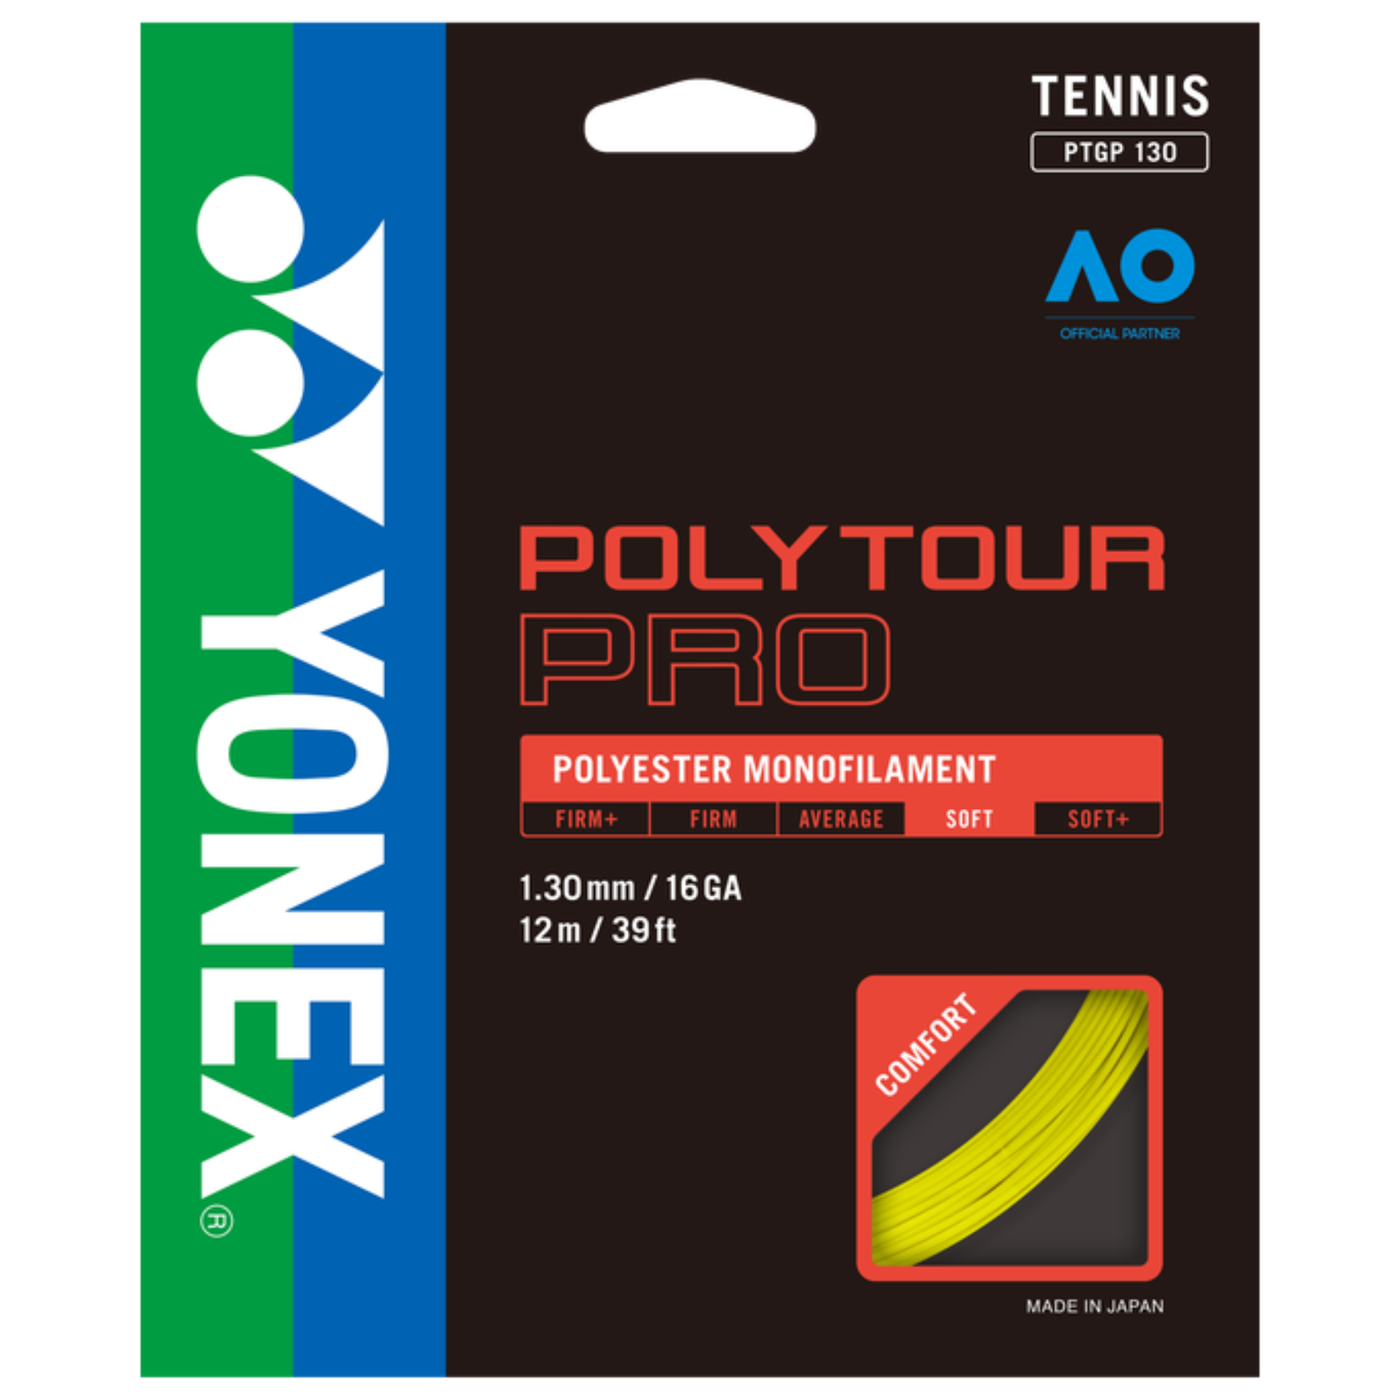 Yonex Poly Tour Pro 130 Tennis String 200m Coil-Flash Yellow